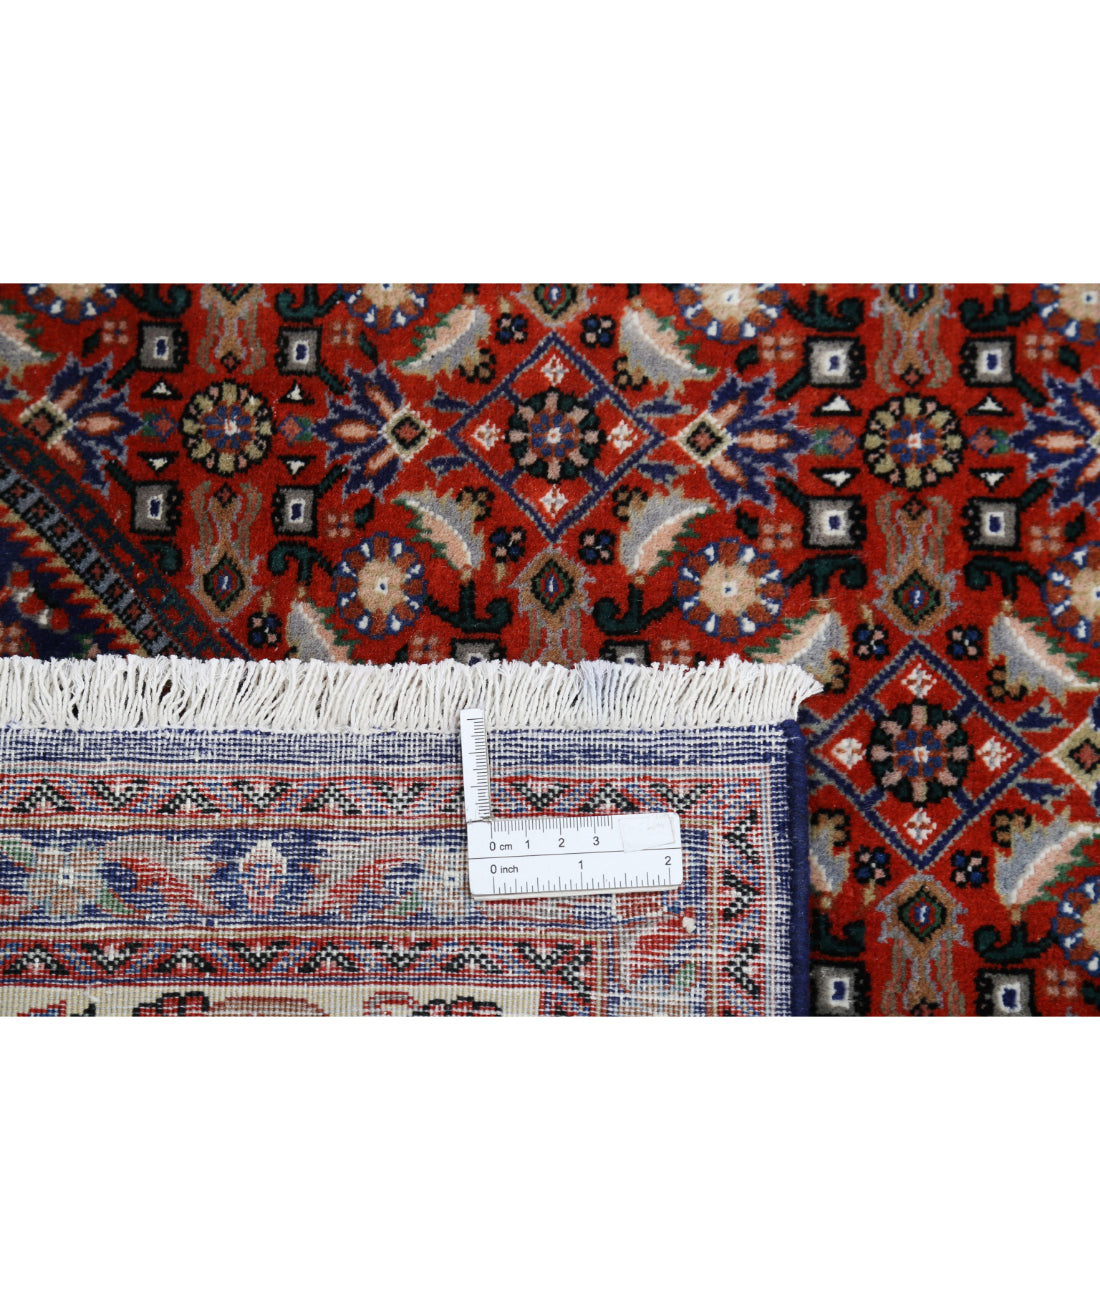 Hand Knotted Persian Bijar Wool & Silk Rug - 6'7'' x 9'9'' 6'7'' x 9'9'' (198 X 293) / Red / Ivory